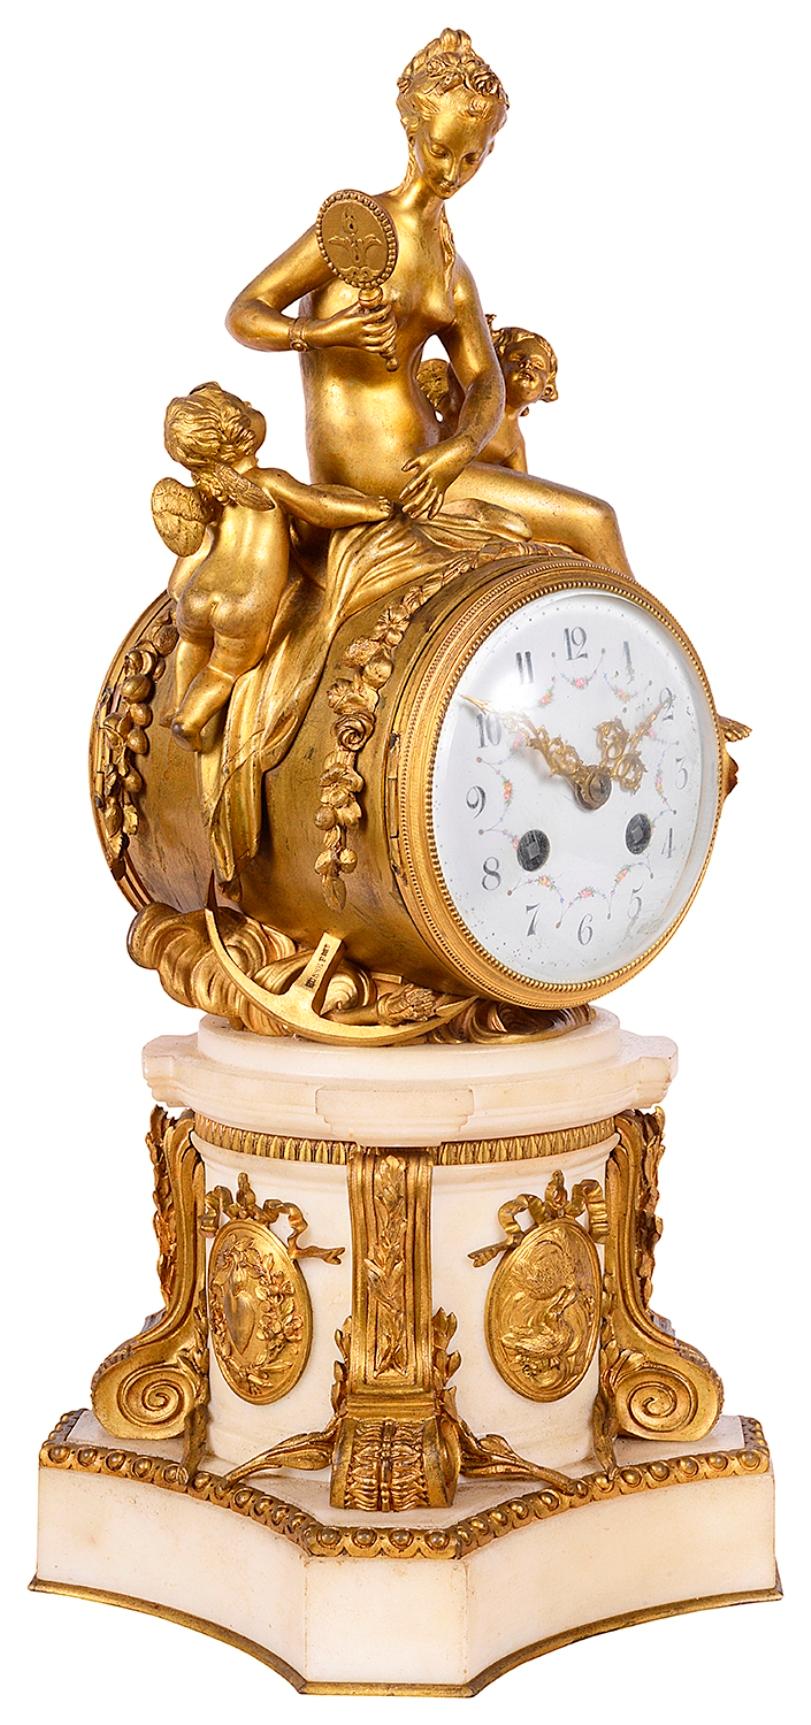 Eine sehr beeindruckende Kaminsimsuhr im klassischen französischen Louis-XVI-Stil des 19. Jahrhunderts mit vergoldeten Ormolu-Figuren einer nackten Jungfrau, die in einen Spiegel schaut, mit zwei Putten an ihrer Seite, über einem Zifferblatt aus